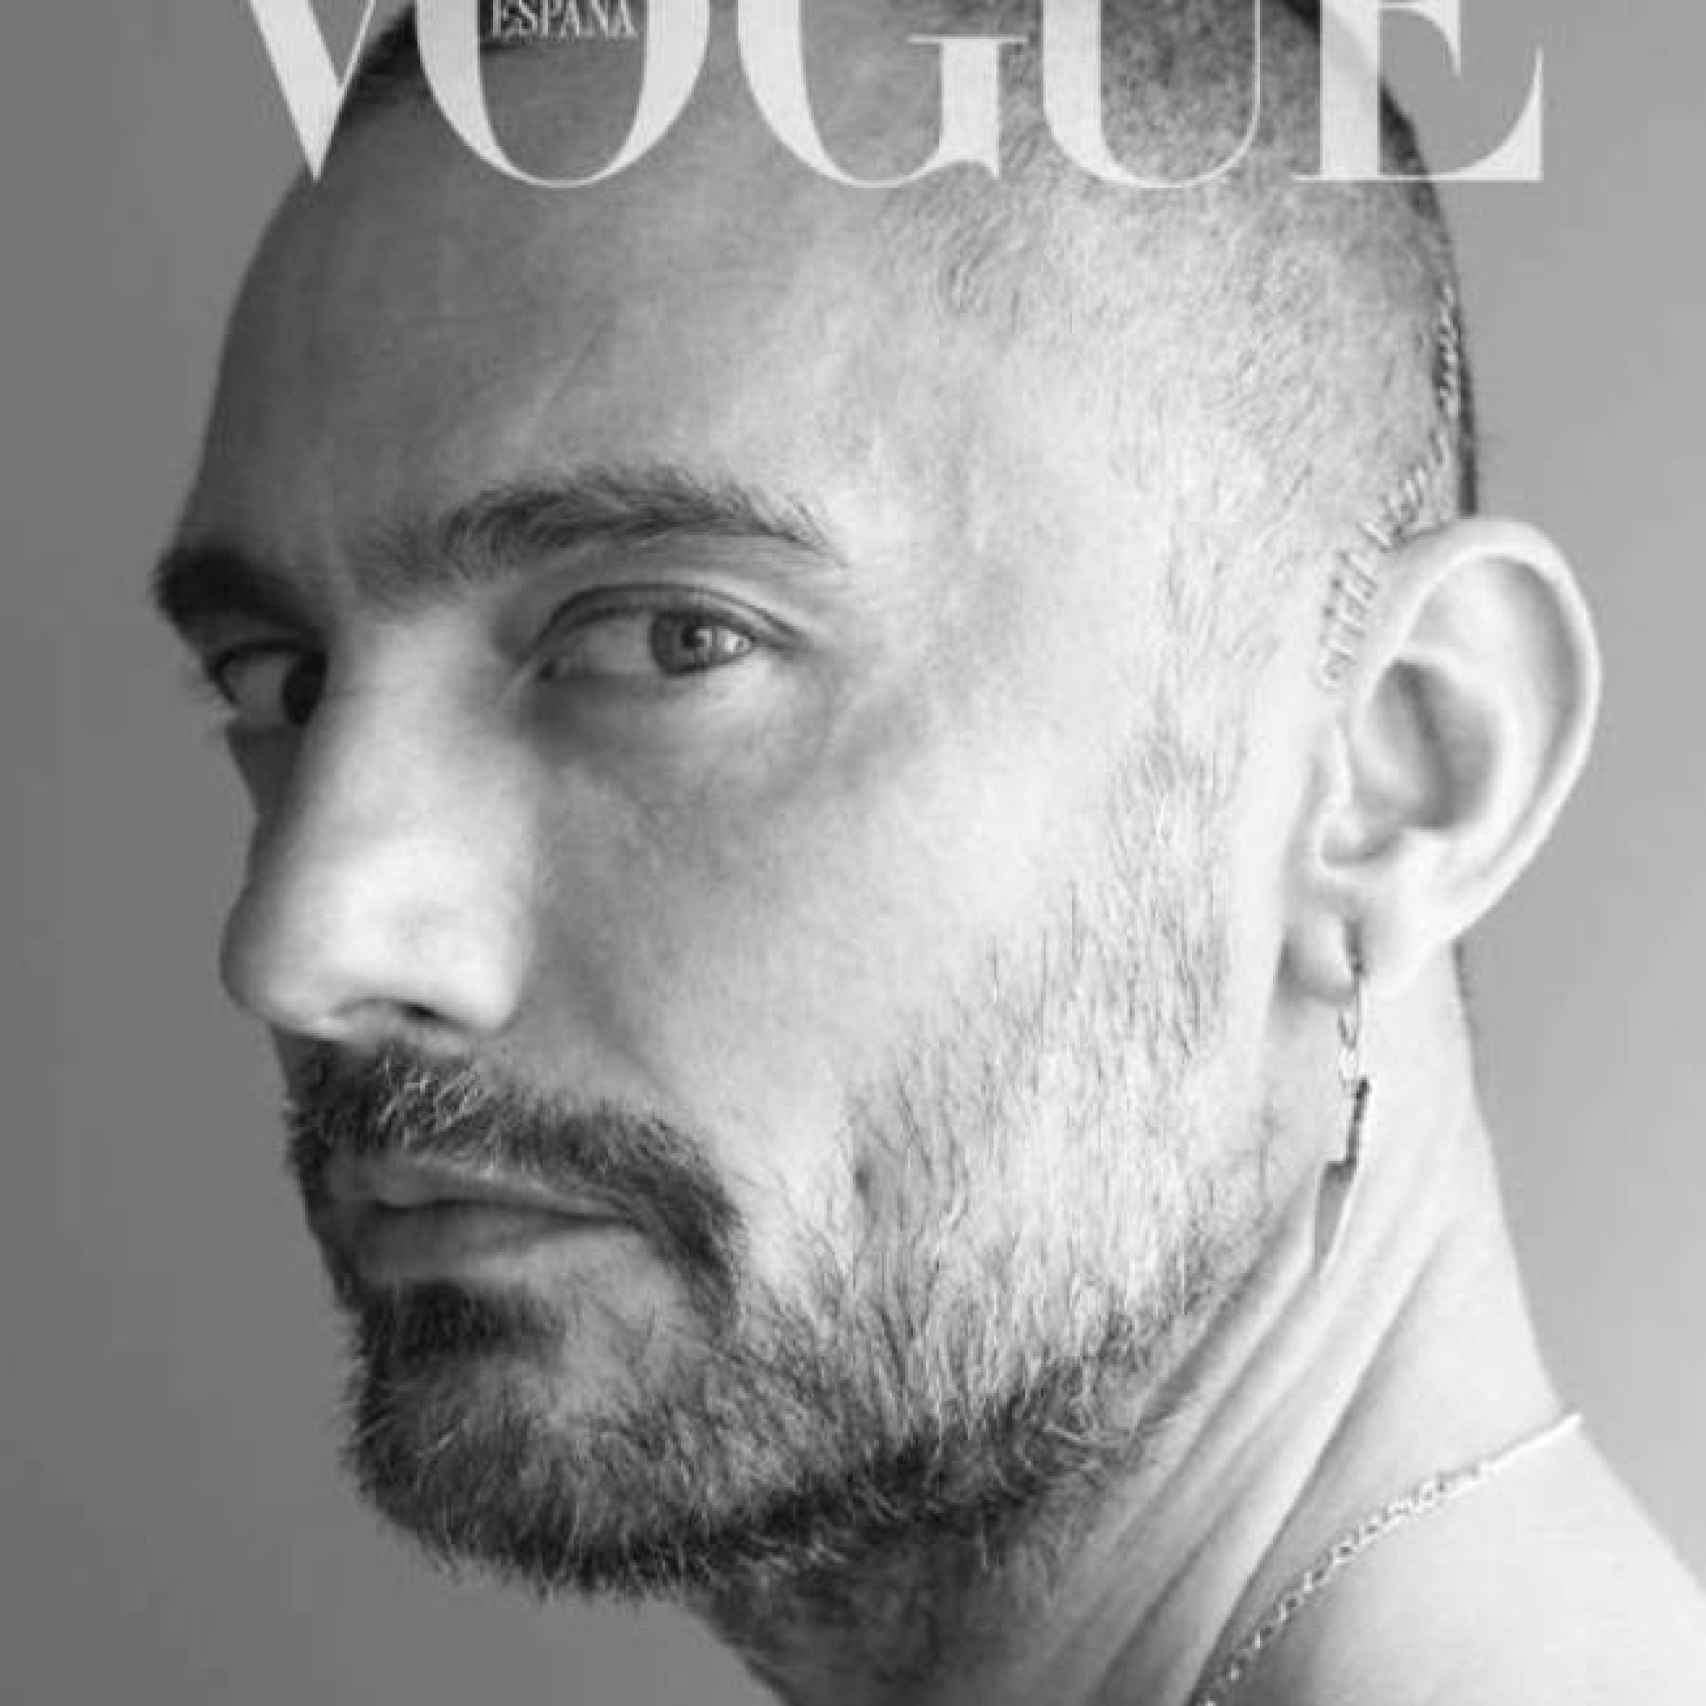 Portada de David Delfín para Vogue